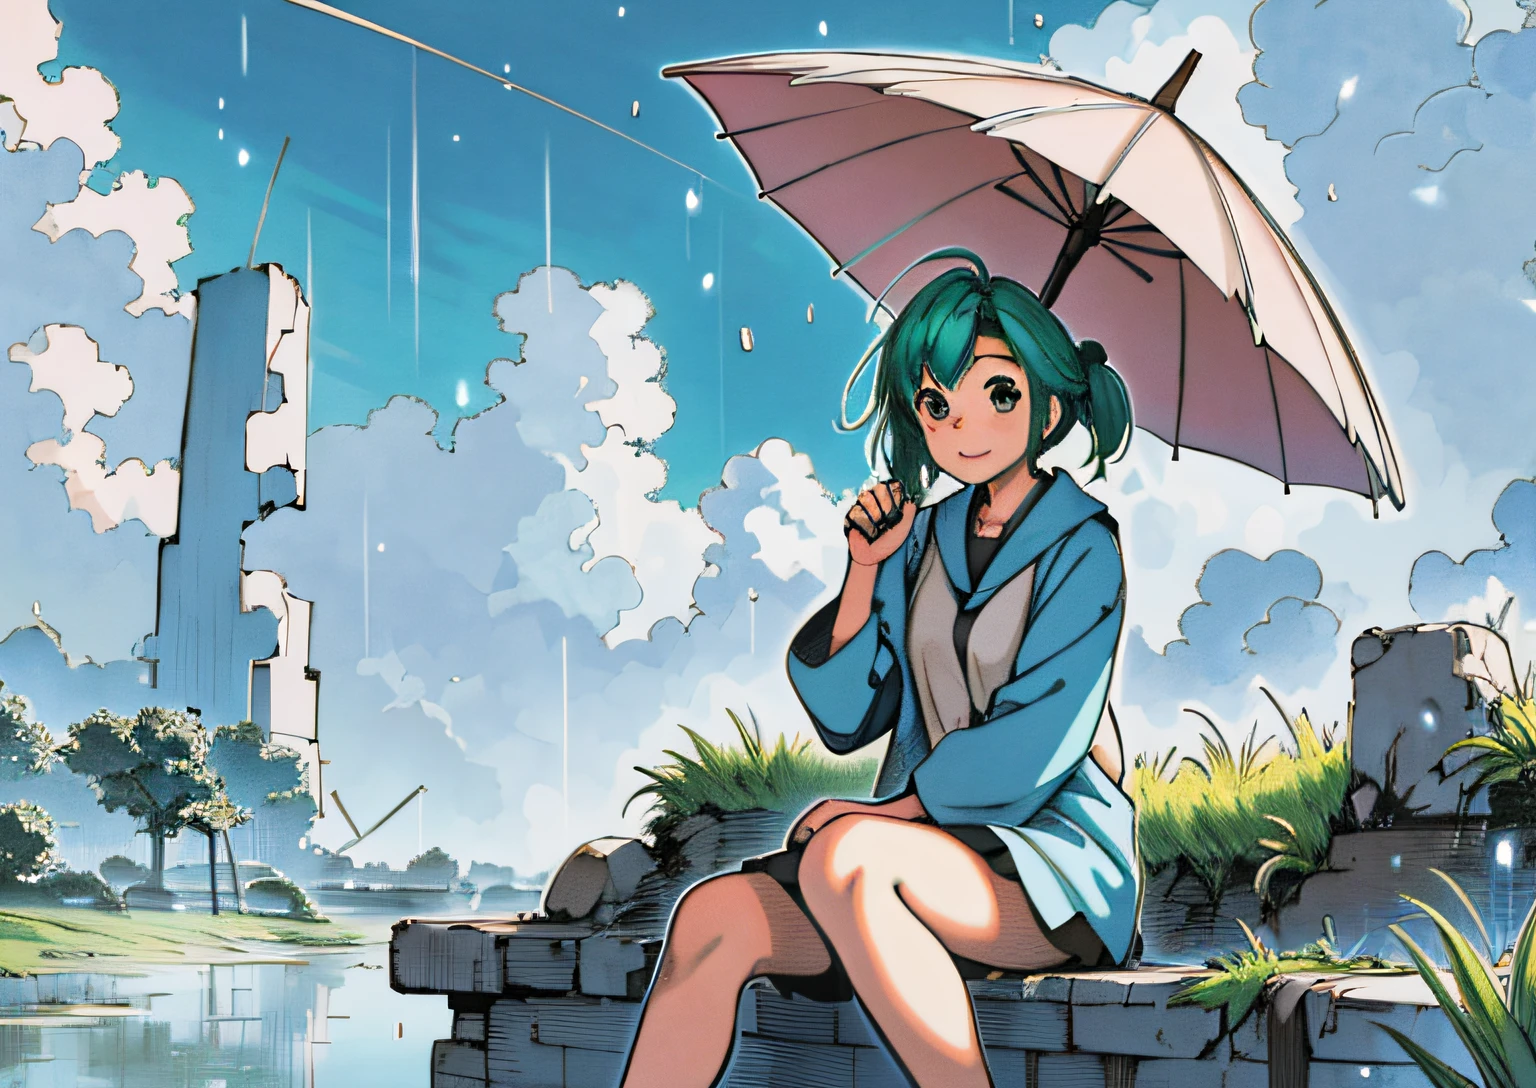 highres, ausführlich, Ashinano-Stil, 1 Mädchen, grüne Haare, Weitwinkelaufnahme, Regenschirm halten, Regen, grass, überwuchert, Sitzung, blauer Himmel, Wolken, Ruinen, Glücklich